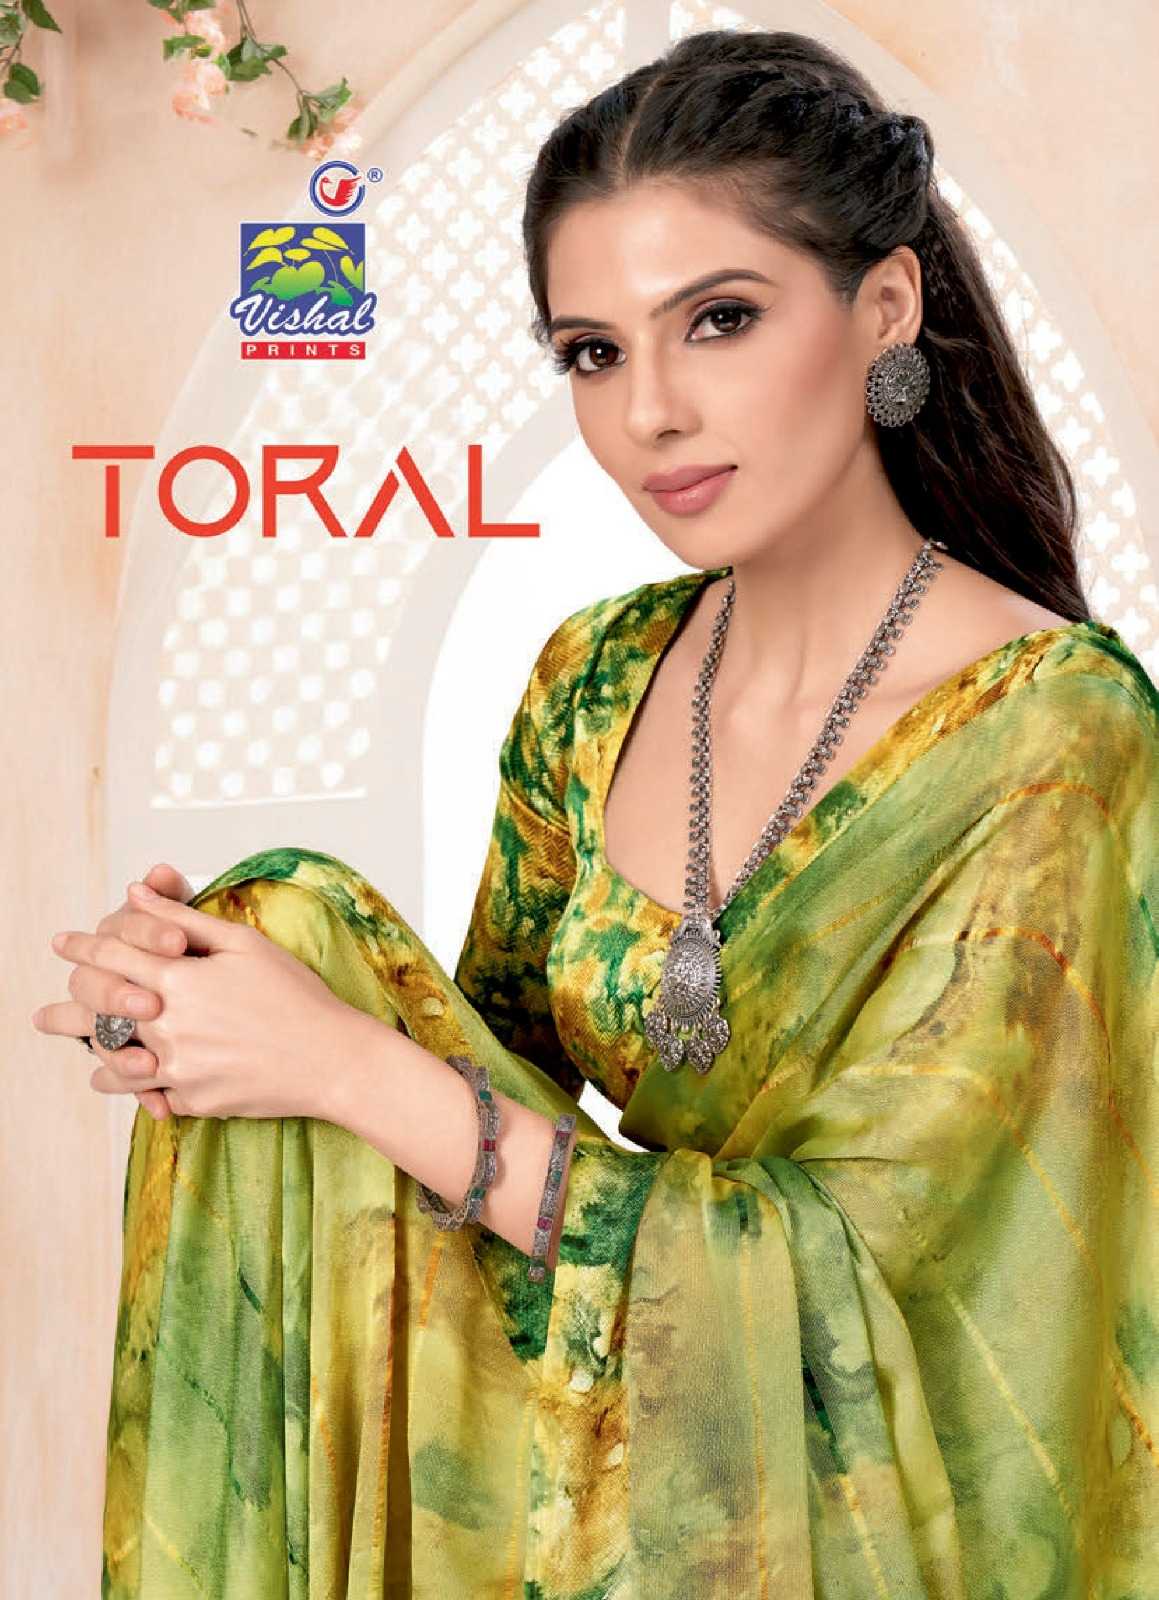 vishal prints present toral 47907-47912 adorable fancy sarees